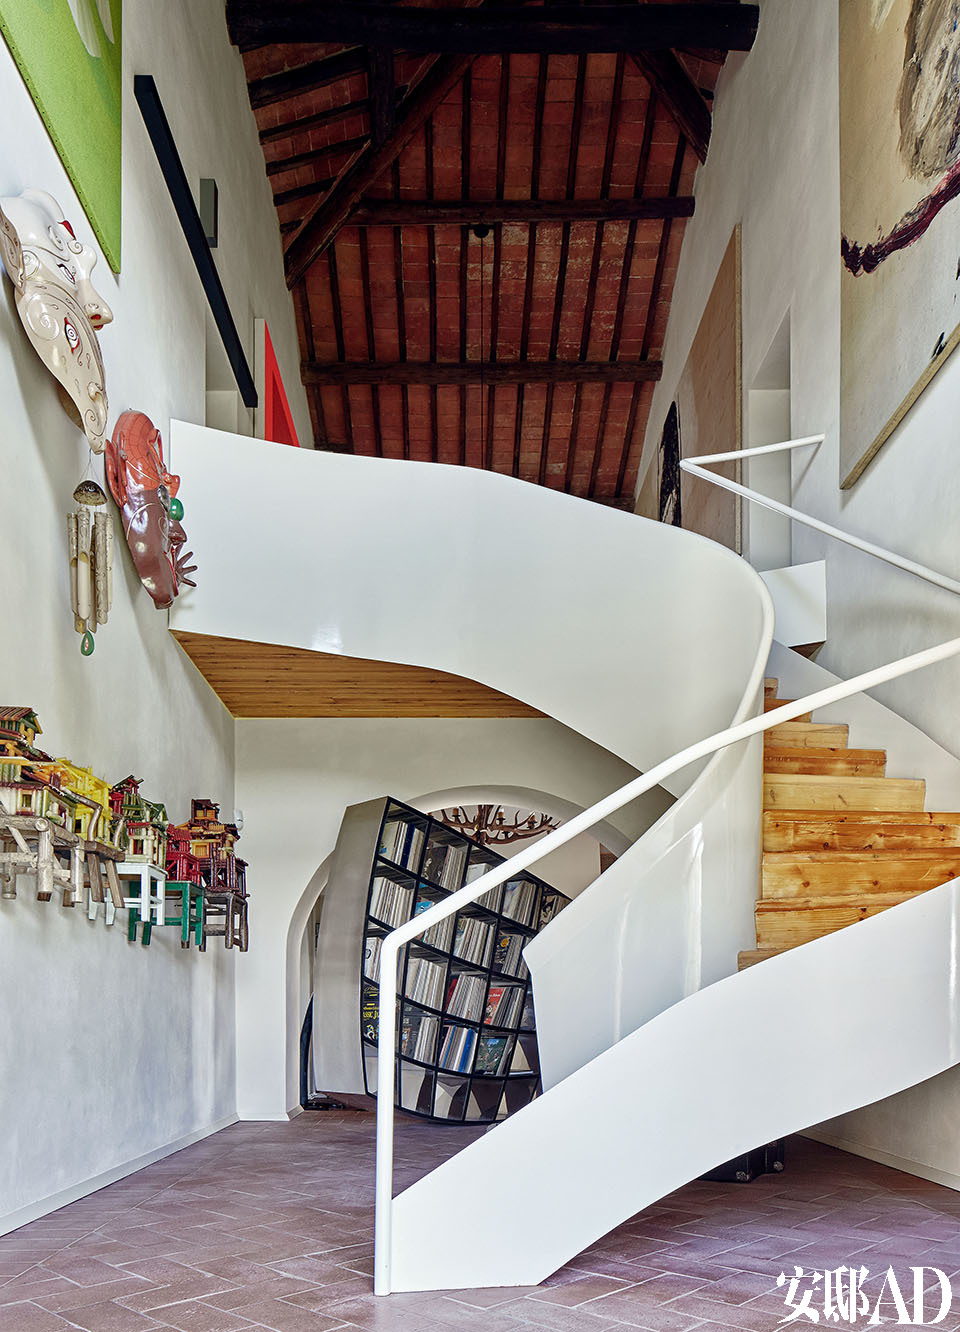 楼梯由MdAA建筑工作室设计。左侧墙壁上的艺术作品被分成三行挂设，这加强了家里这部分空间的双重高度感。从下往上，最近的是
中国艺术家陈箴2000年用蜡烛制作的作品Un Village sans frontières； 第二行是Luigi Ontani
（1998/2009）的作品Máscaras Musicales《音乐面具》，第三行的绿色图画Whiring Green是意大
利艺术家Aldo Mondino 1997年的作品。楼梯右侧的墙壁上挂着Julian Schnabel的画作。照片
的尽头，楼梯的后方是Ron Arad在2007年设计的书架“Restless”。